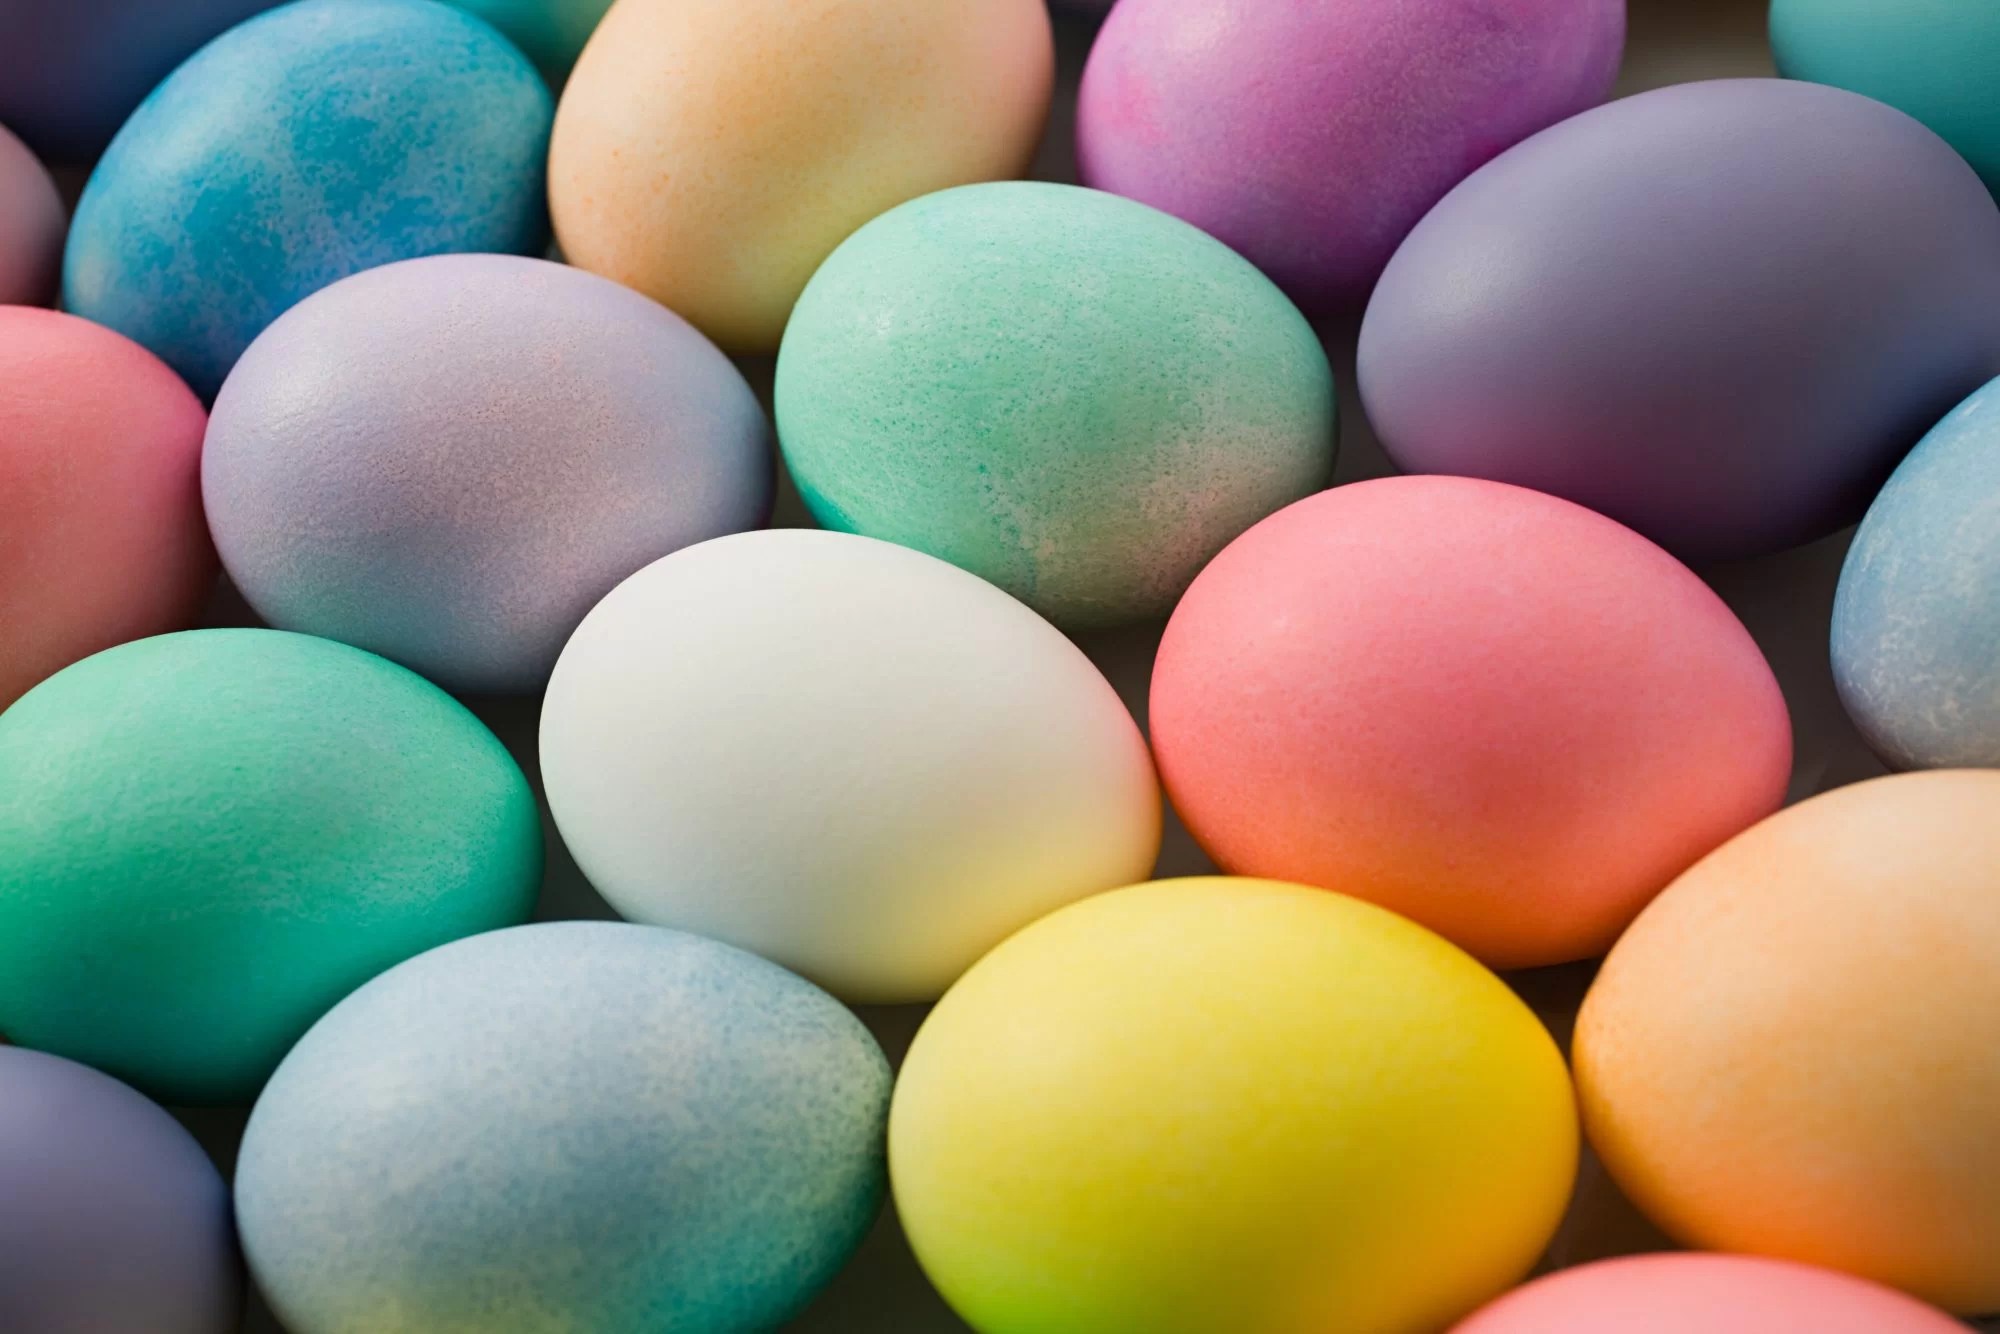 طرق تلوين البيض في شم النسيم باللون الأحمر والأصفر والبنفسجي والأخضر بمكونات صحية وامنه